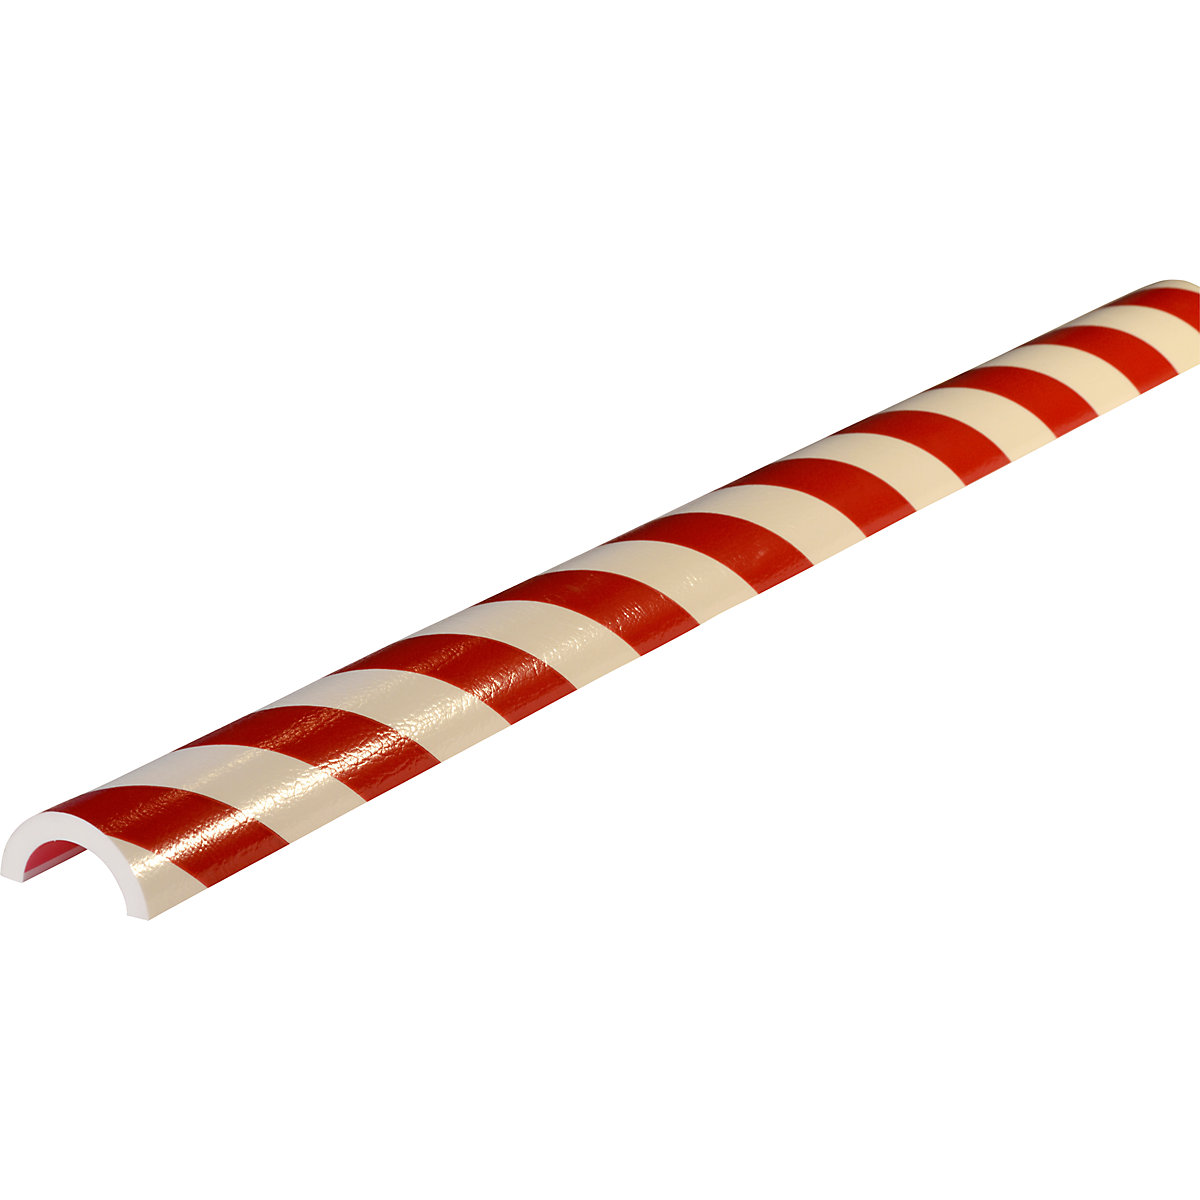 Protección de tubos Knuffi® – SHG, tipo R50, pieza de 1 m, en rojo y blanco-10